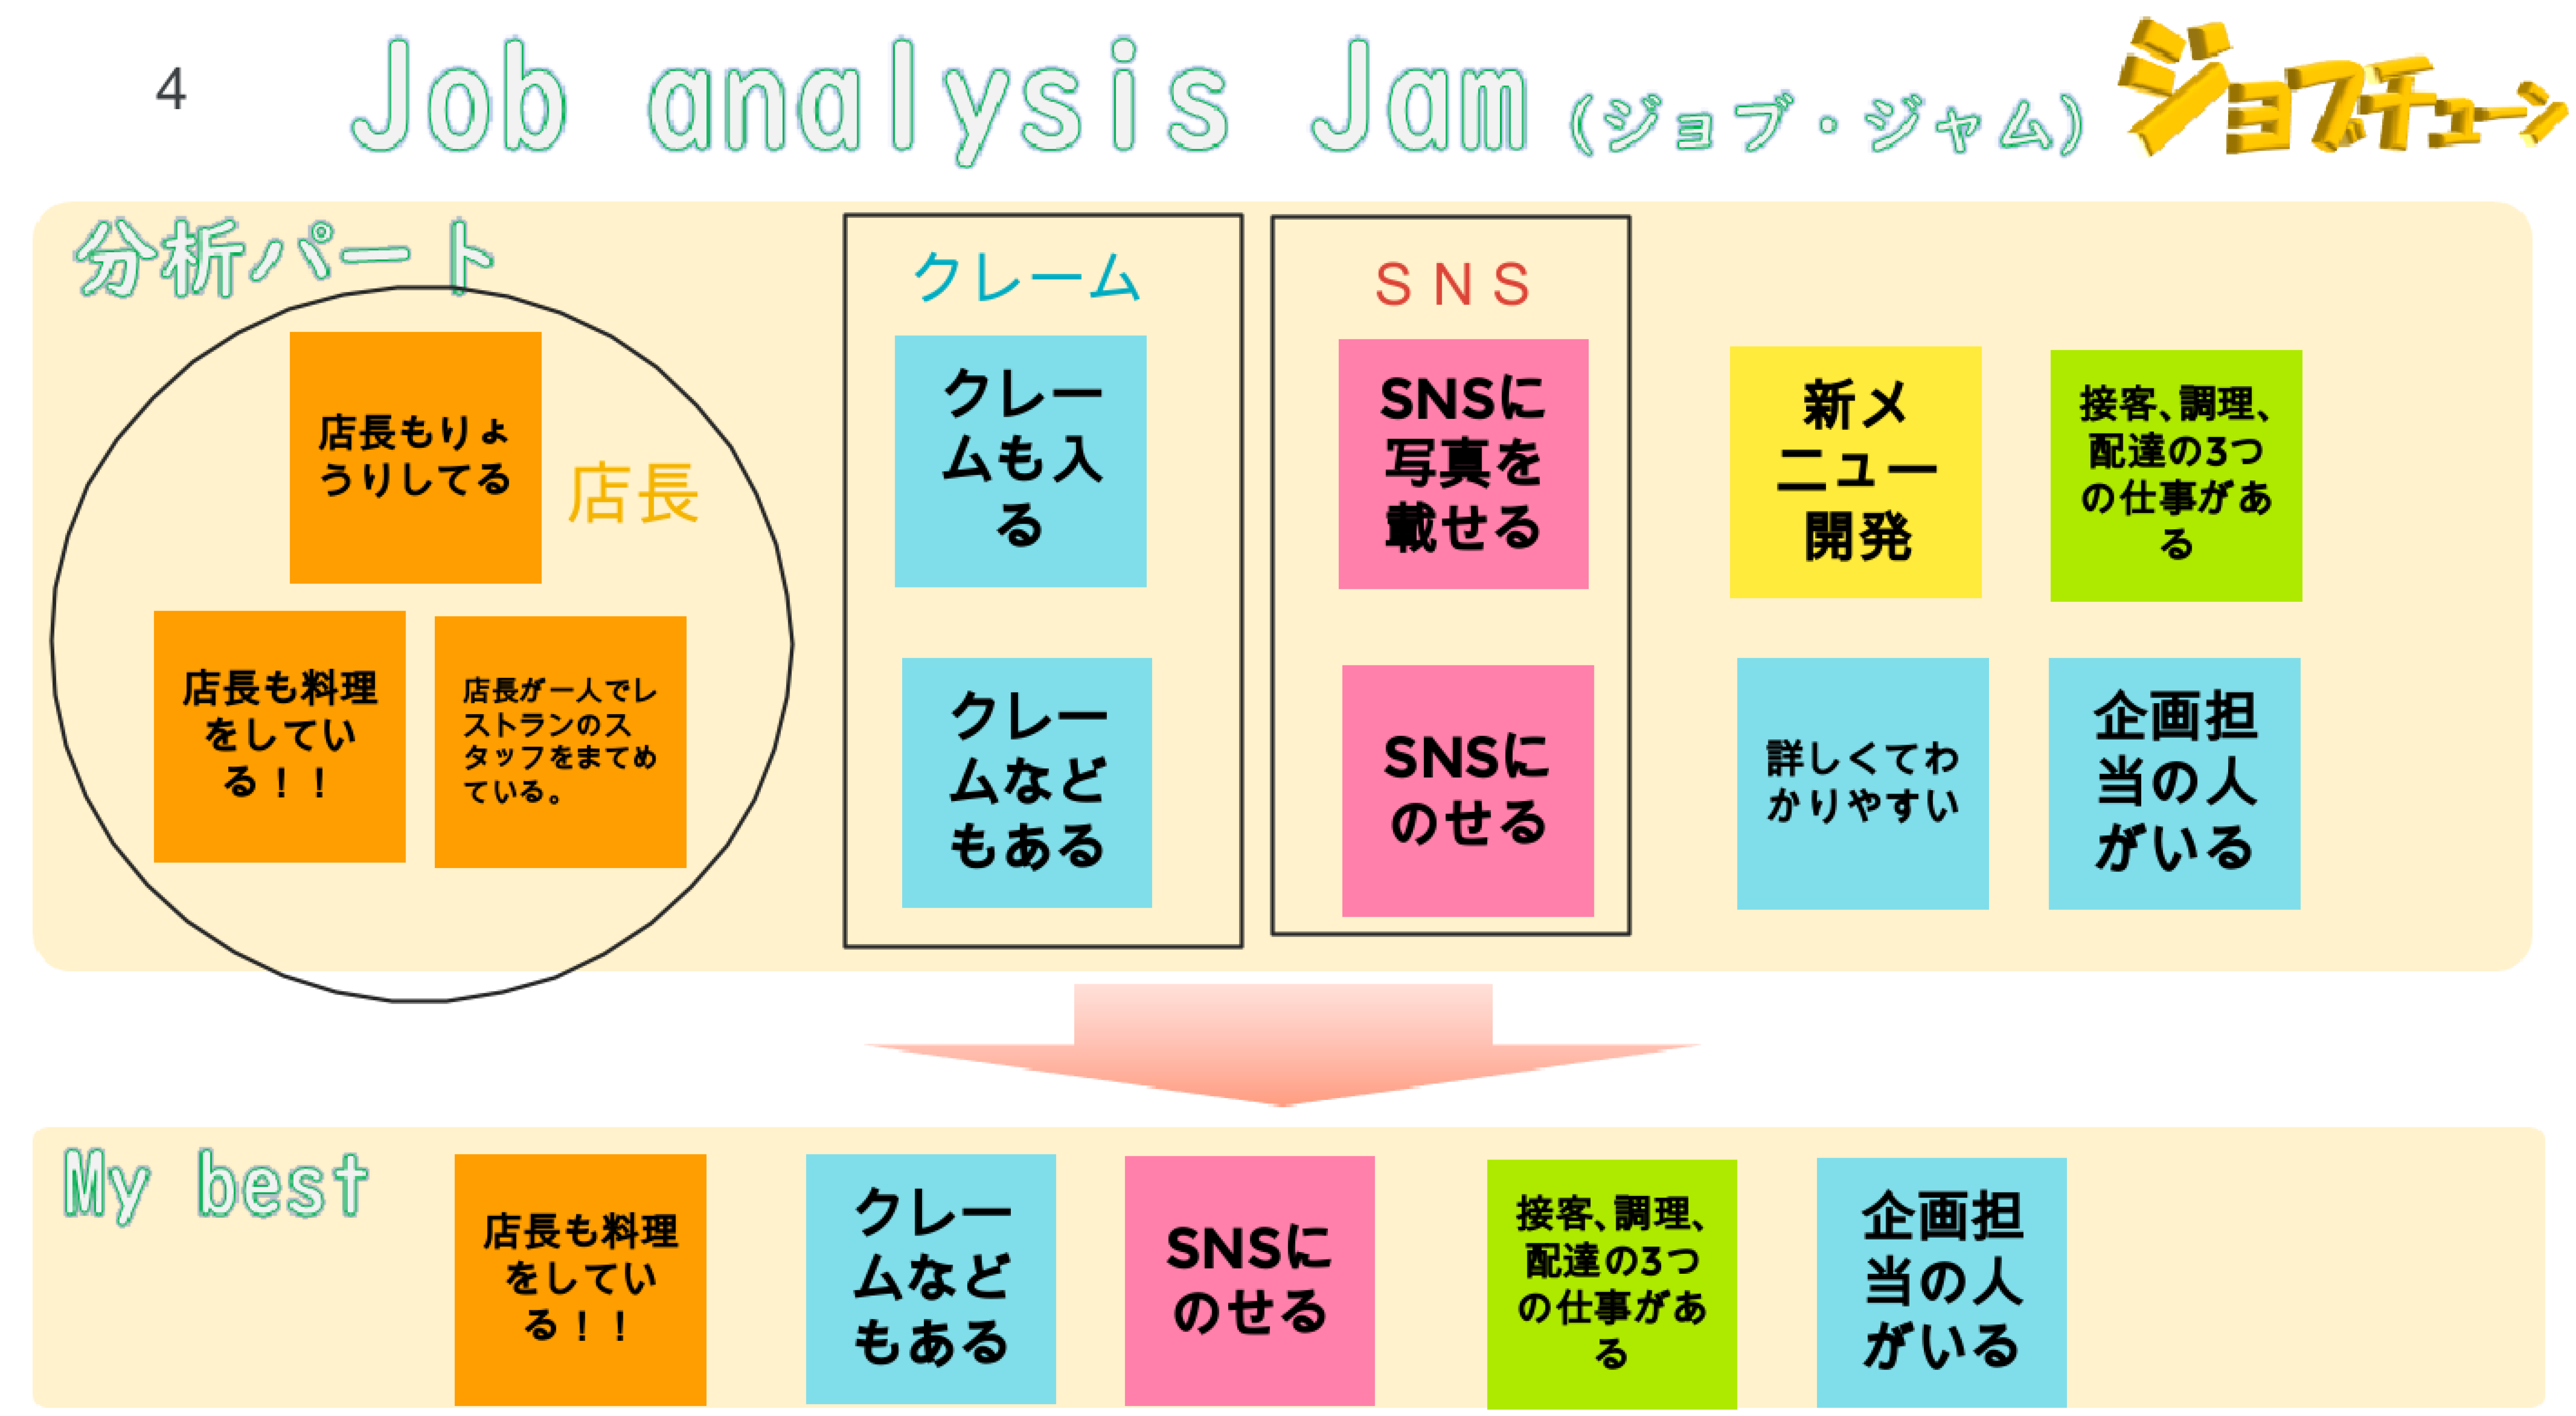 Job analysis Jam（ジョブジャム）